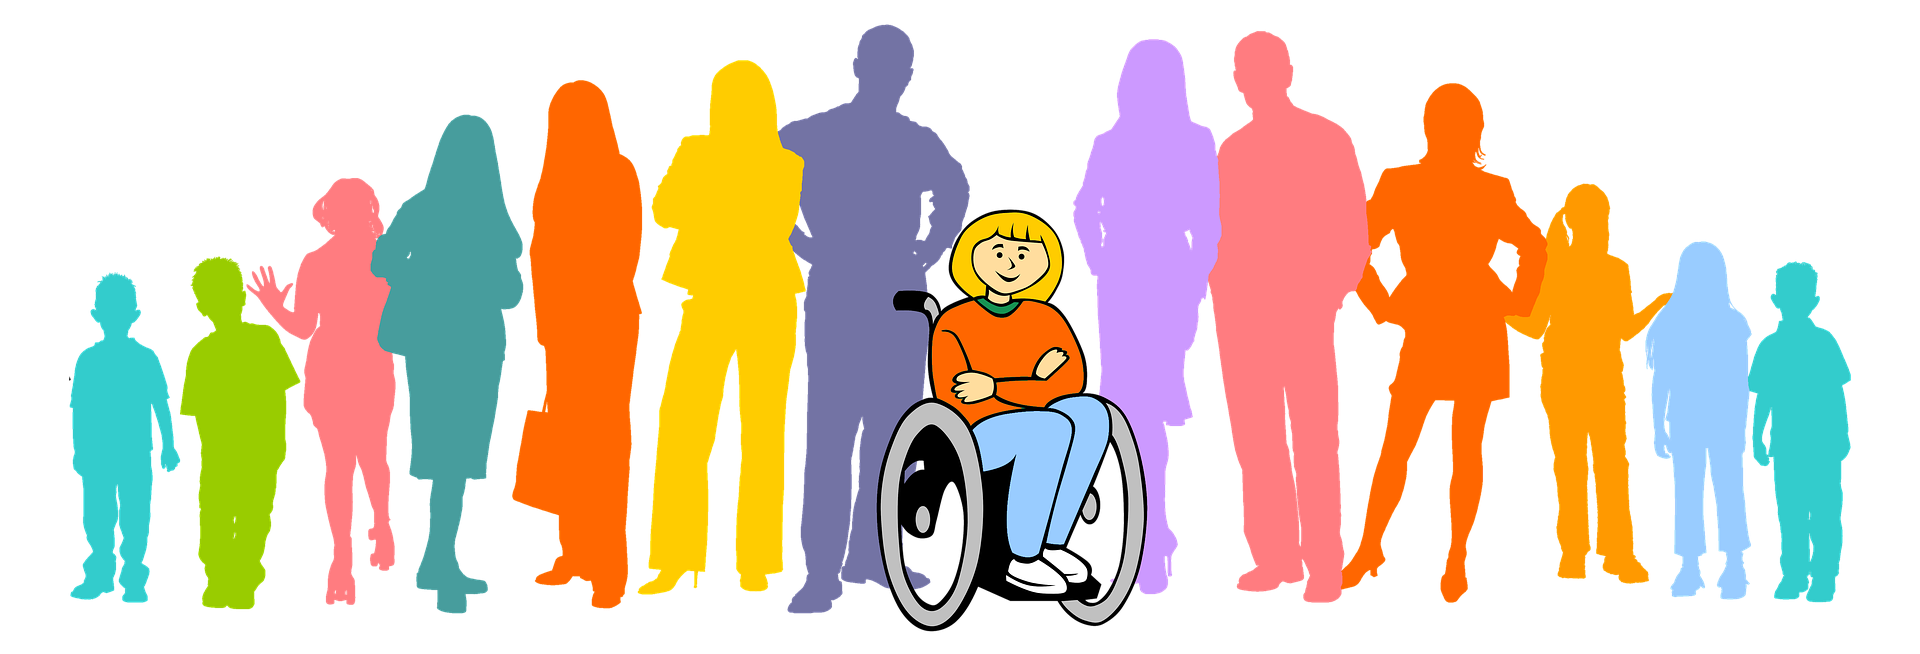 Дискриминация и защита прав. Люди с ограниченными возможностями картинки. Социализация людей с инвалидностью. Люди с ОВЗ. Общество инвалидов.